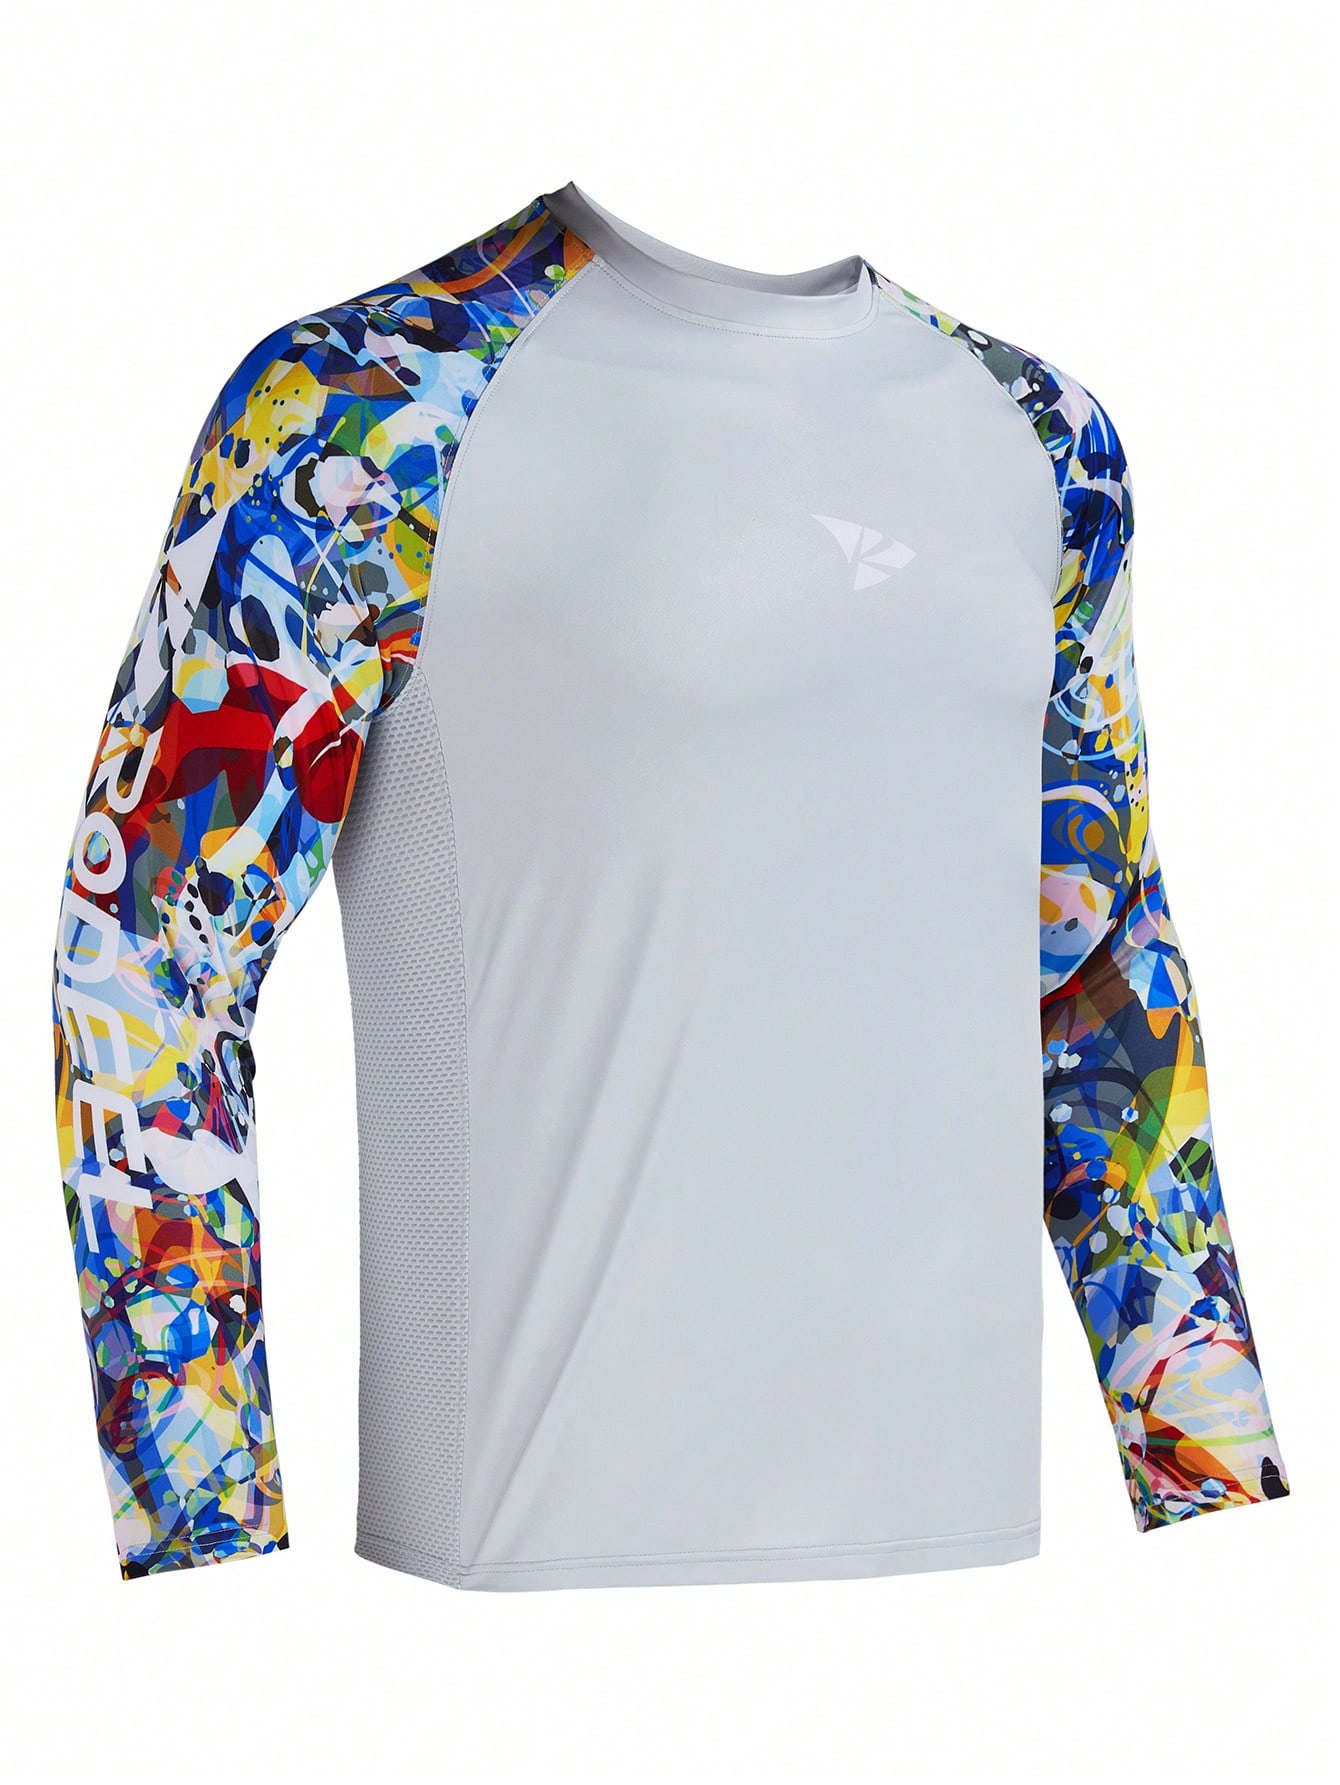 RODEEL Мужская рубашка с защитой от солнца, серый новинка 2021 походные и рыболовные рубашки gamakatsu спортивная быстросохнущая мужская одежда для рыбалки одежда для велоспорта и рыбалки